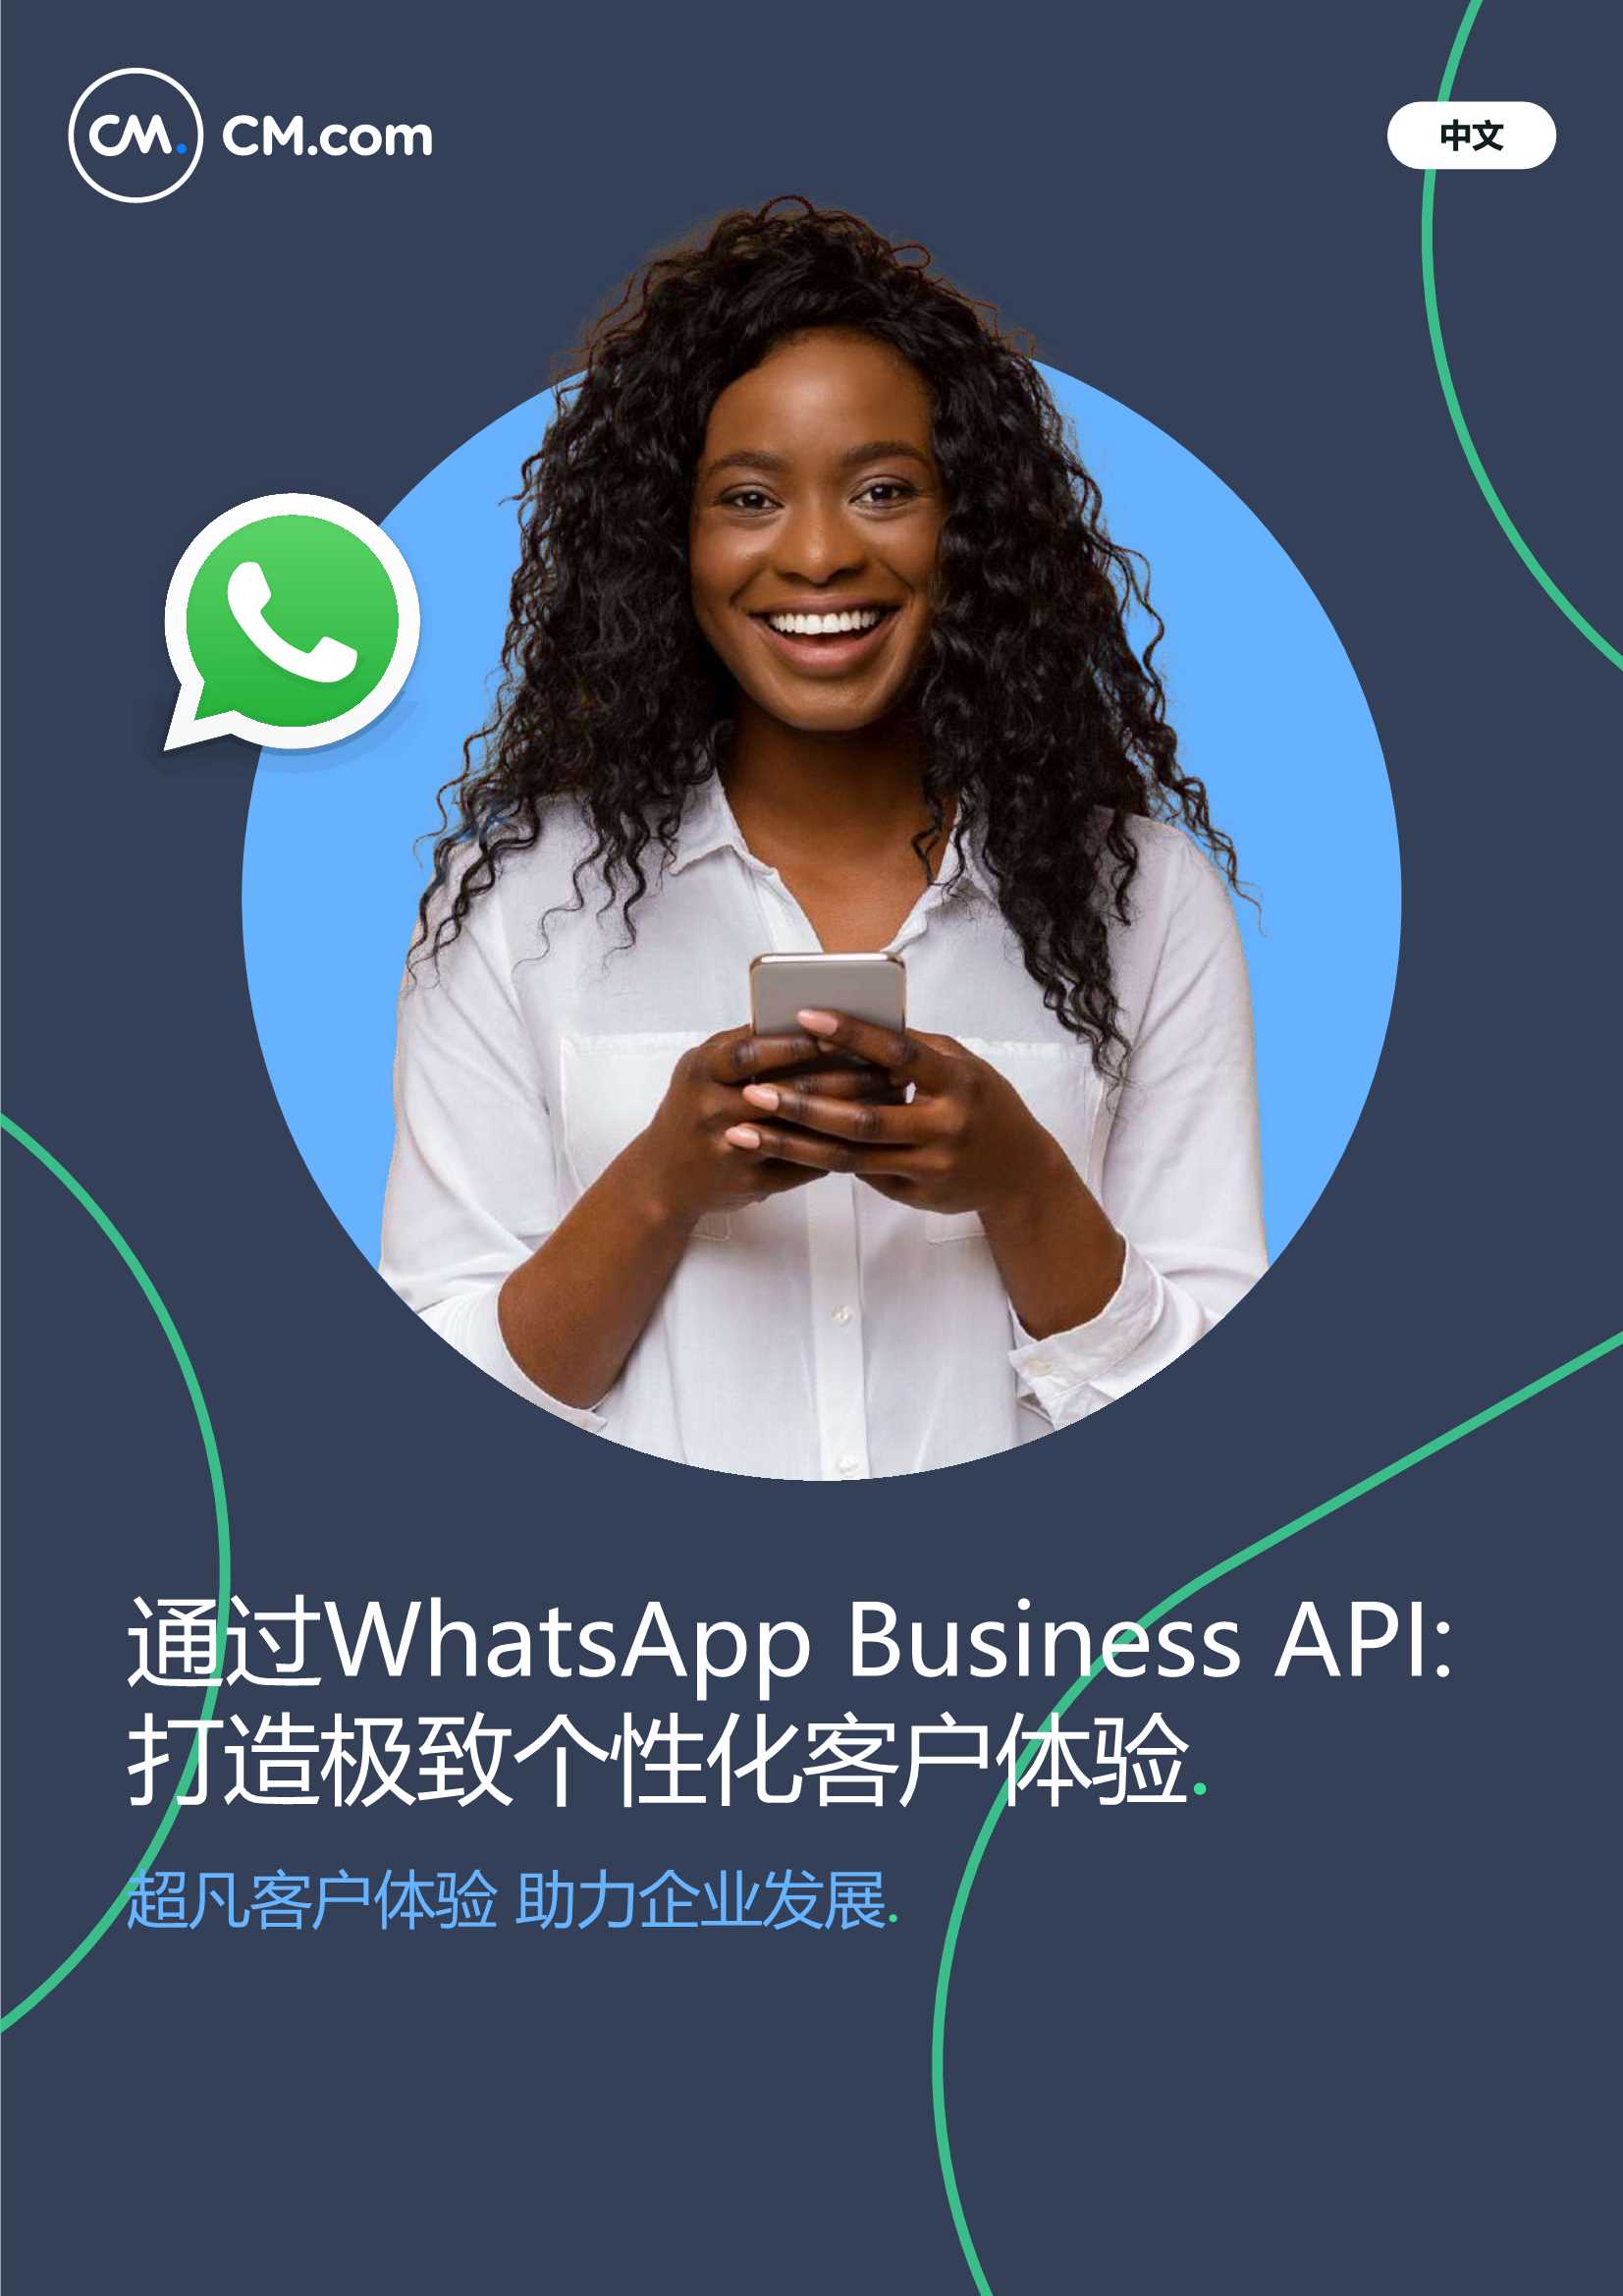 通过WhatsApp Business API 打造极致个性化客户体验-2021.09-31页